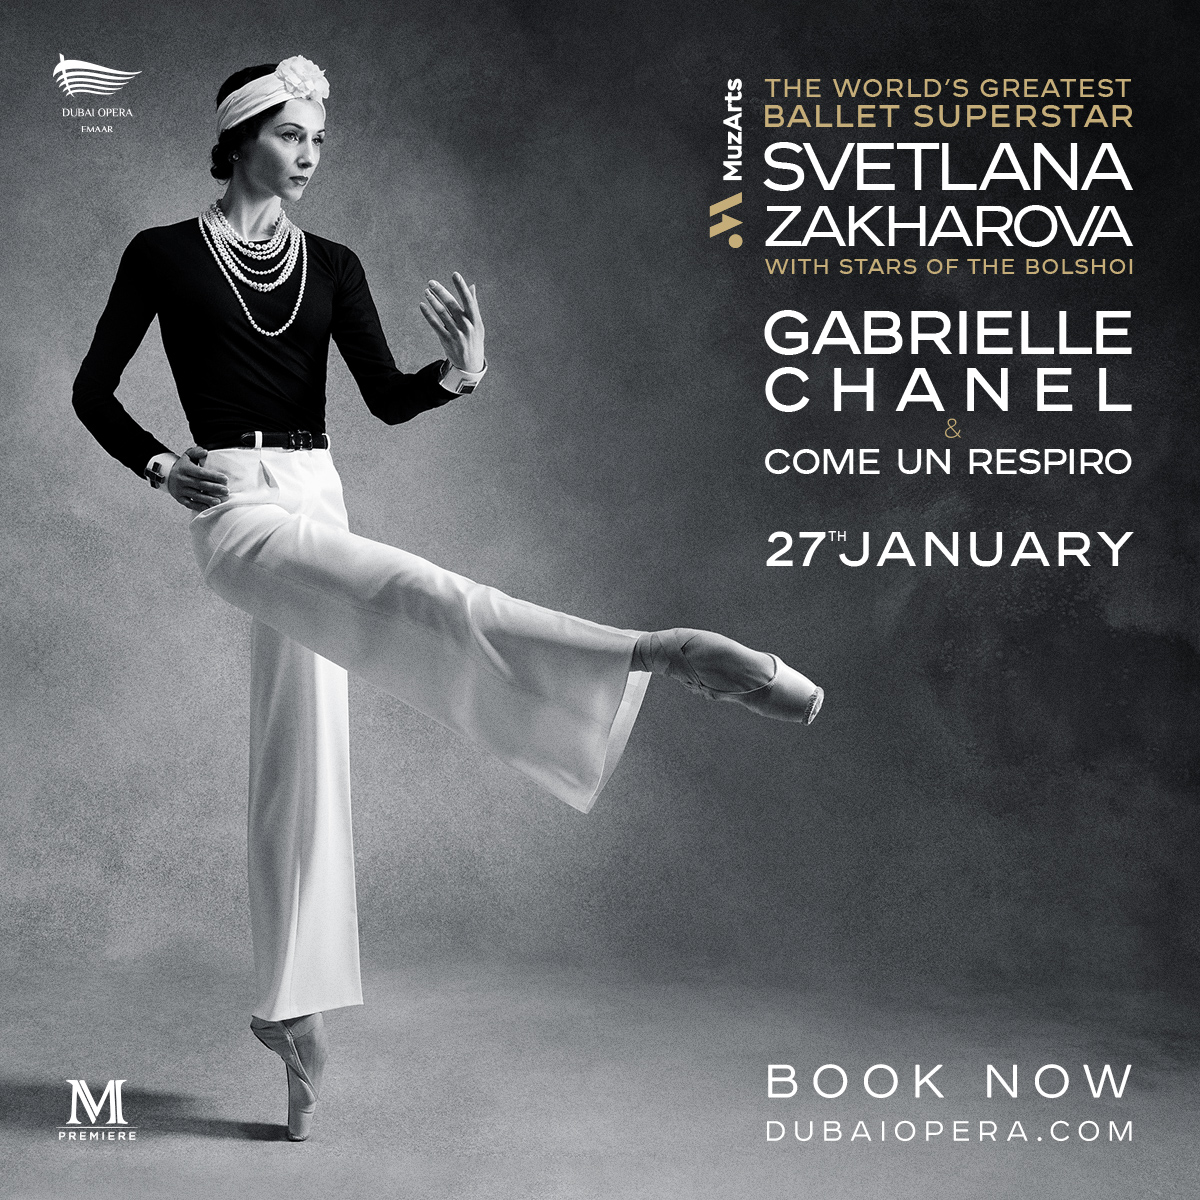 MuzArts & M Premiere present the Bolshoi and Teatro alla Scala superstar SVETLANA ZAKHAROVA